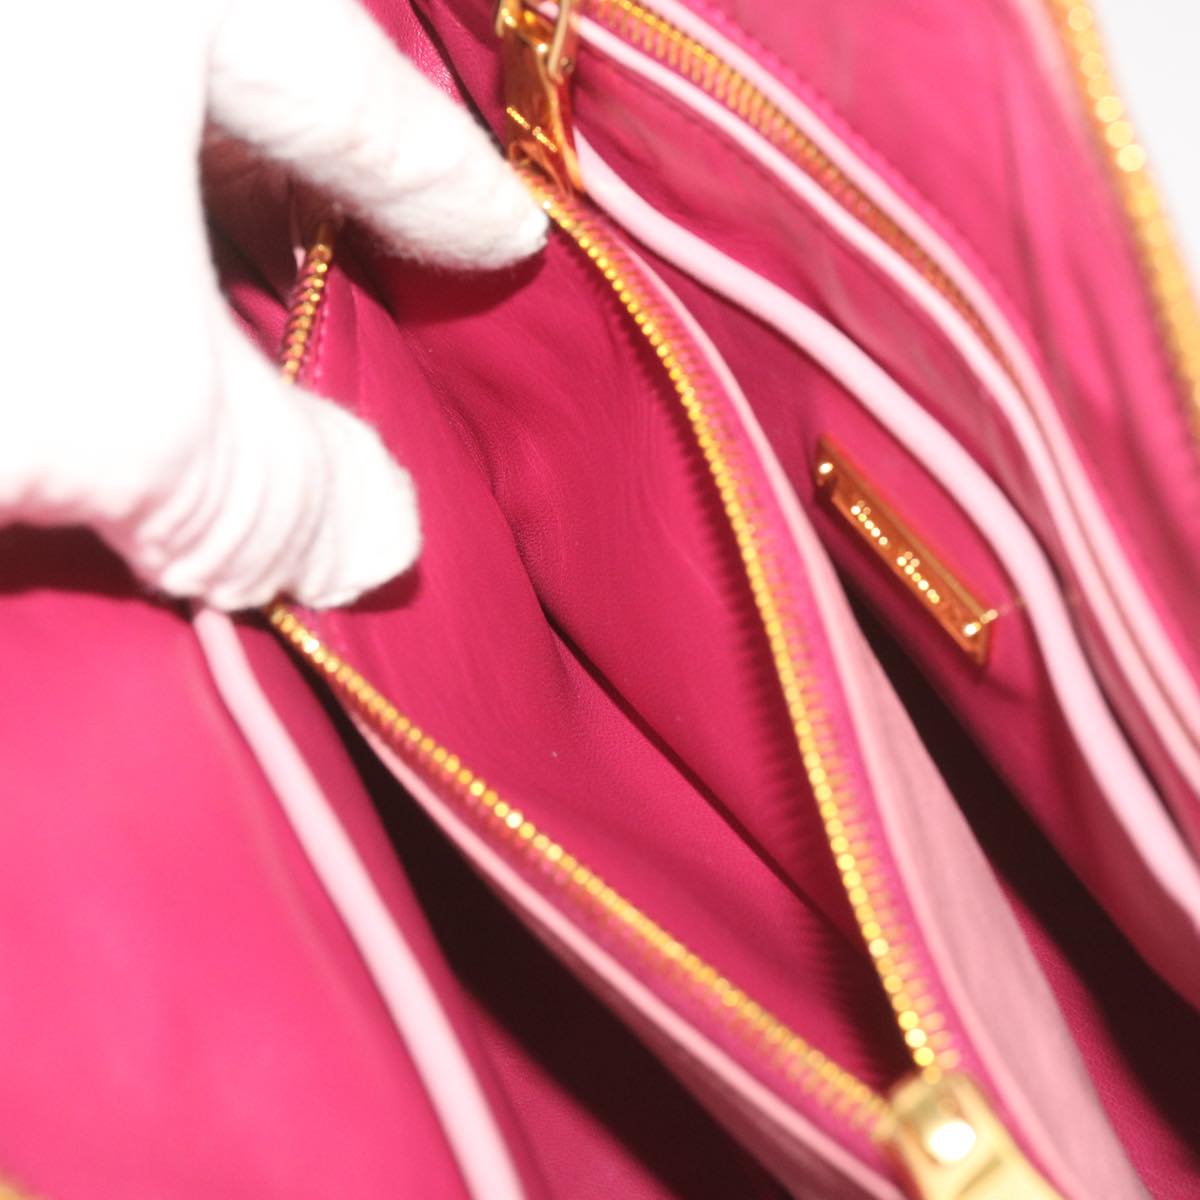 Miu Miu Hand Bag Leather 2way Pink Auth yk10851